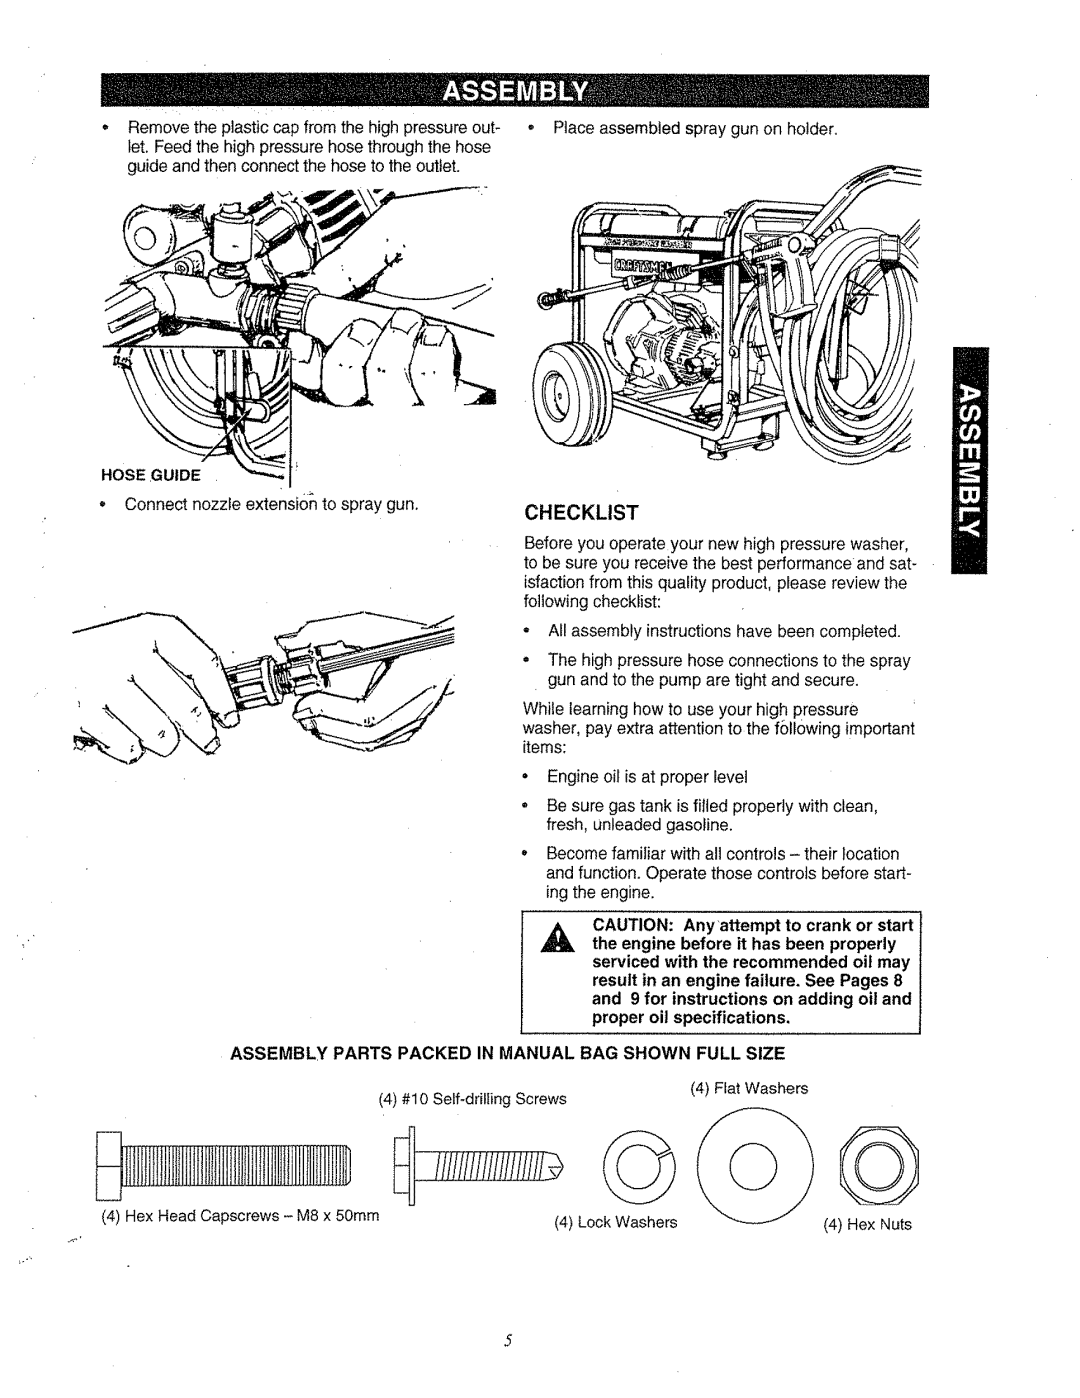 Craftsman 580.763 IlJI1EtIIIiIlIJtlliIi!Viiiiiiili, Checklist, Hose Guide, result in an engine failure. See Pages 